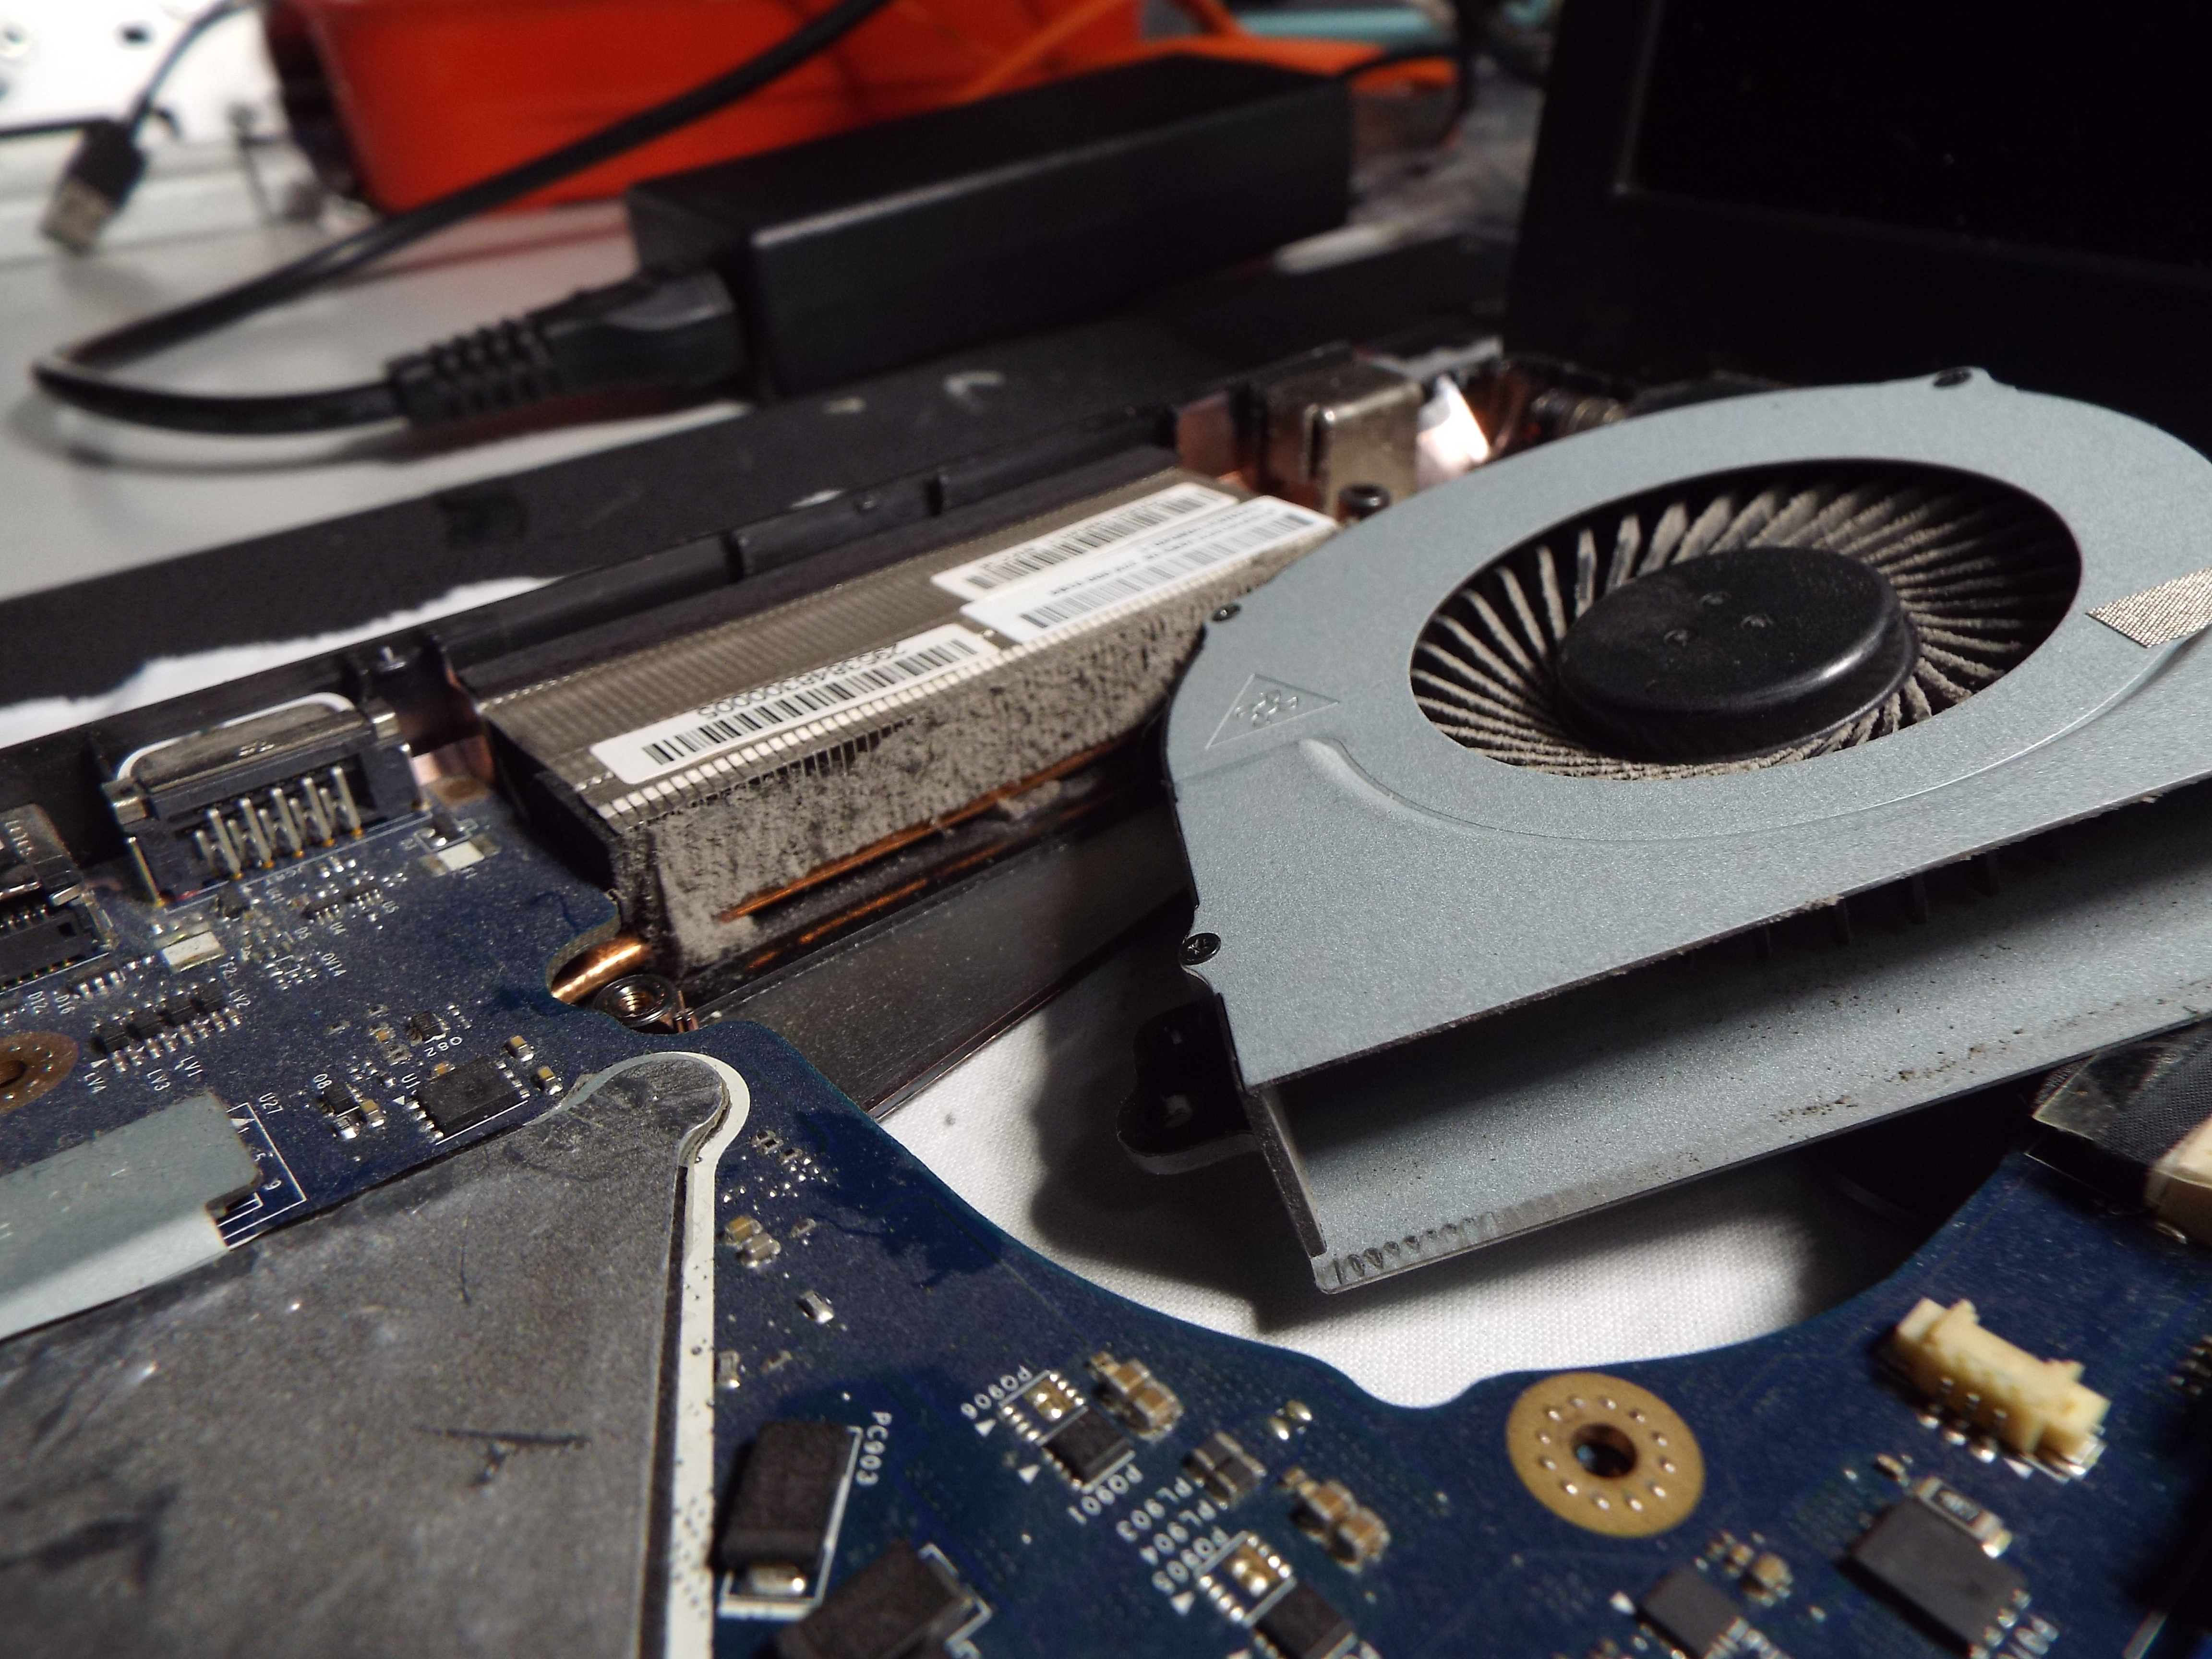 ASUS 18.6 Zoll Laptop GPU defekt weil W䲭etauscher mit Staub zugesetzt